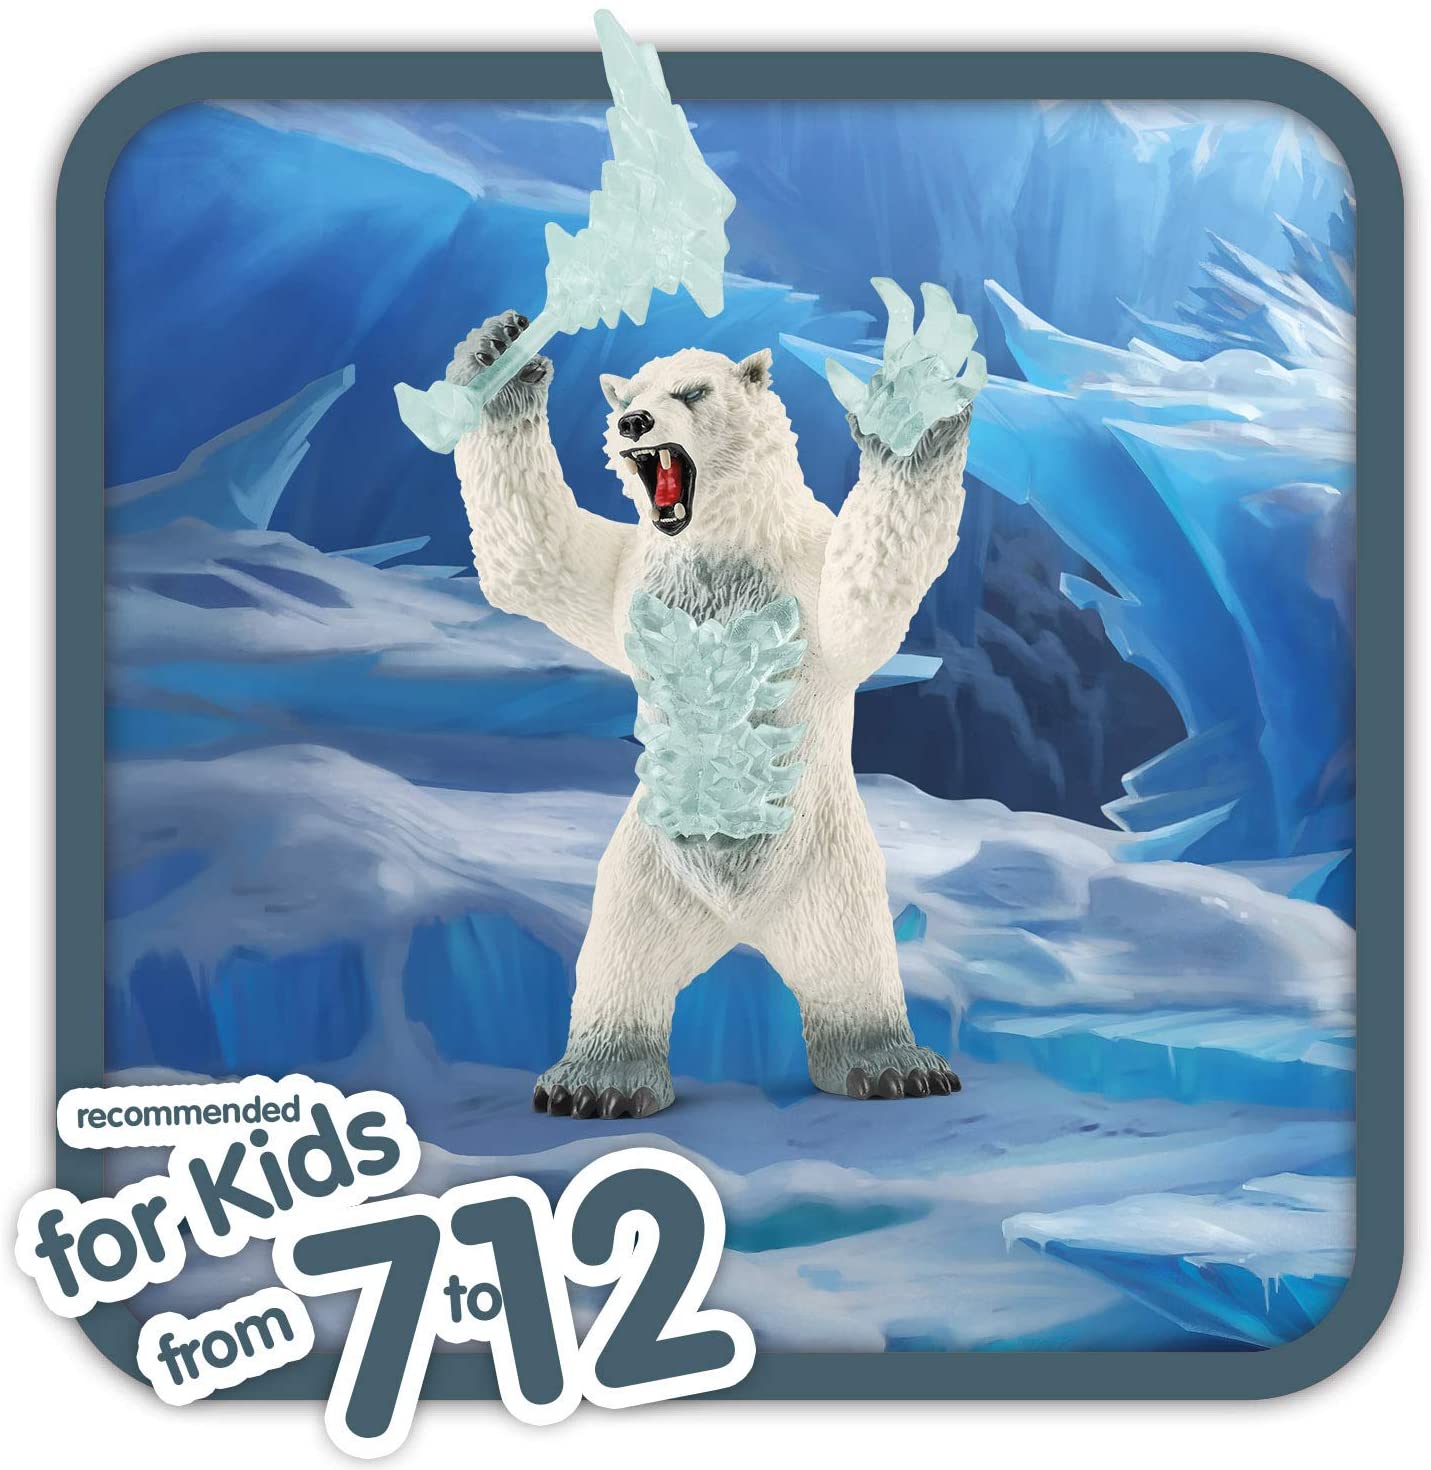 Schleich Blizzard Bear